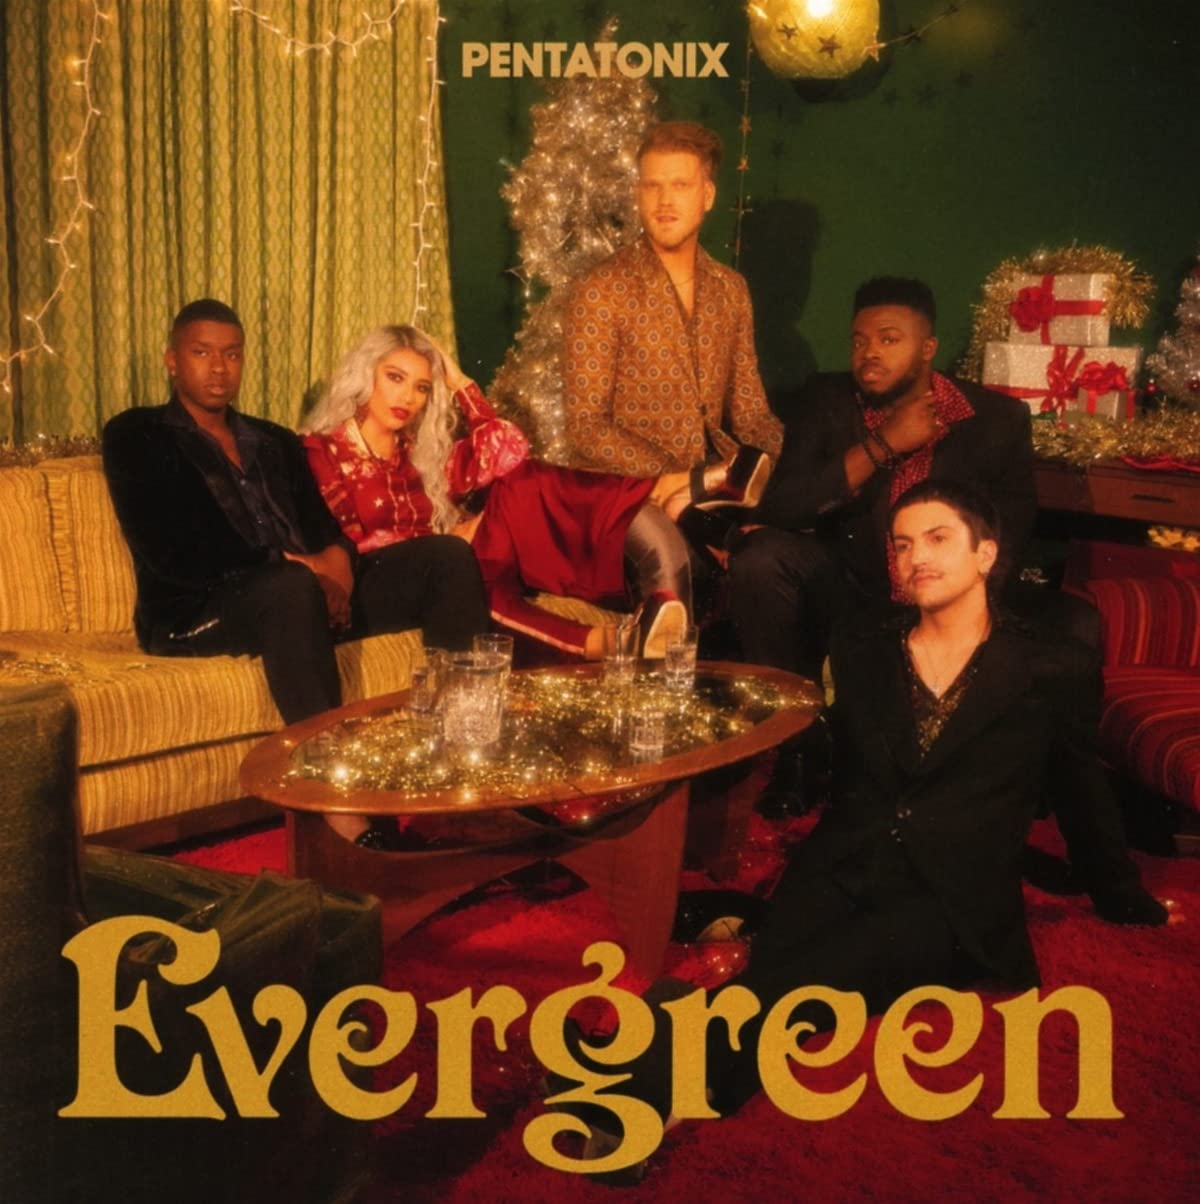 Pentatonix: “Evergreen” – Wie grün sind deine Blätter?